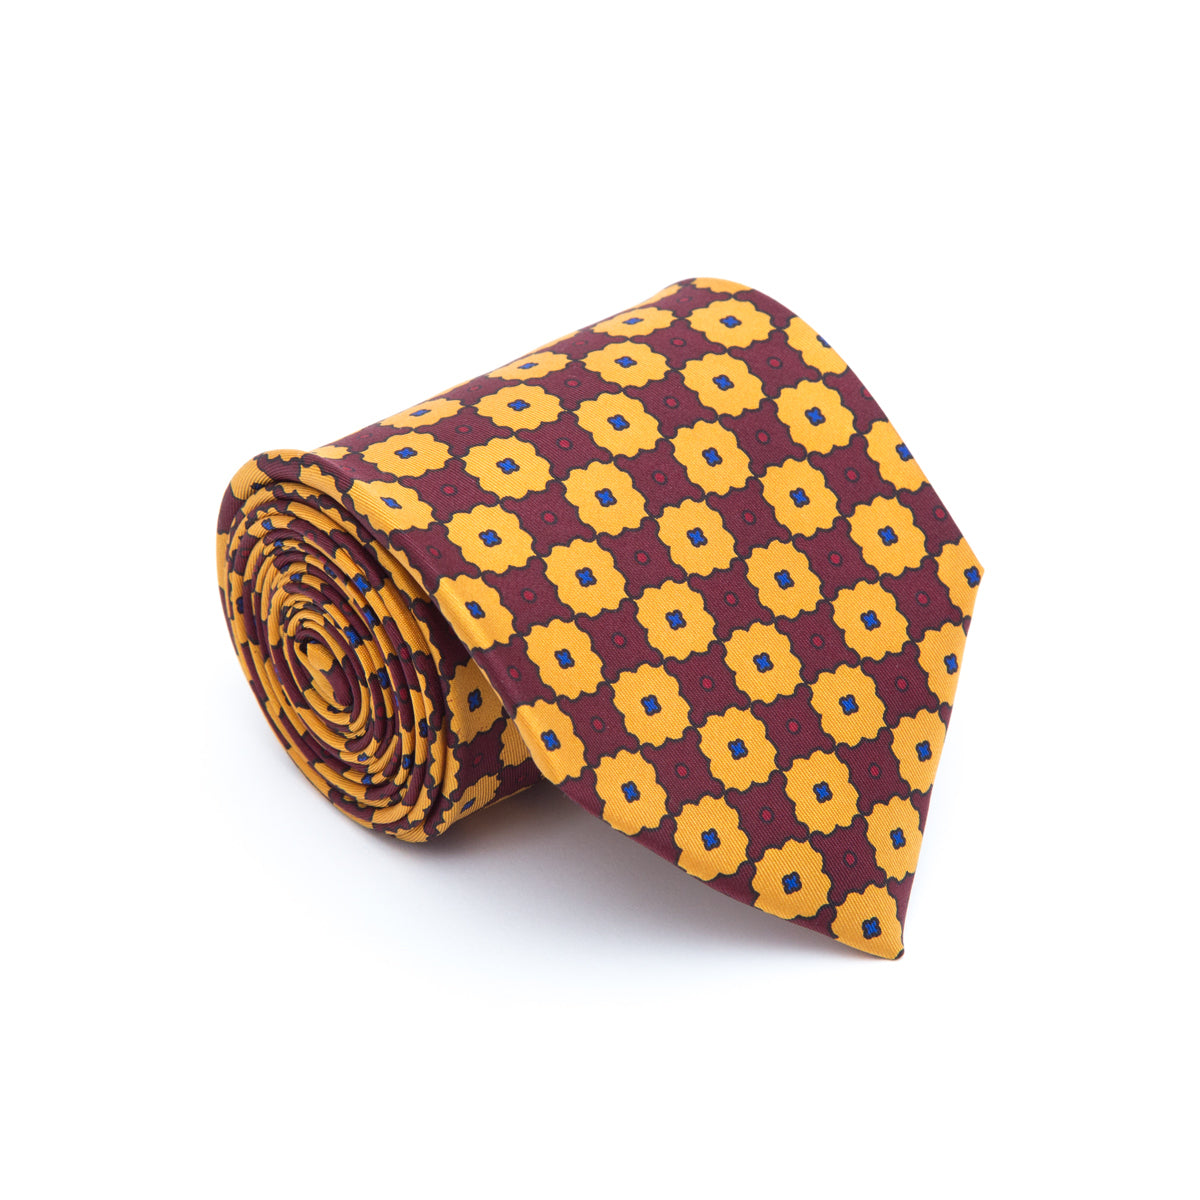 Naples yellow tie